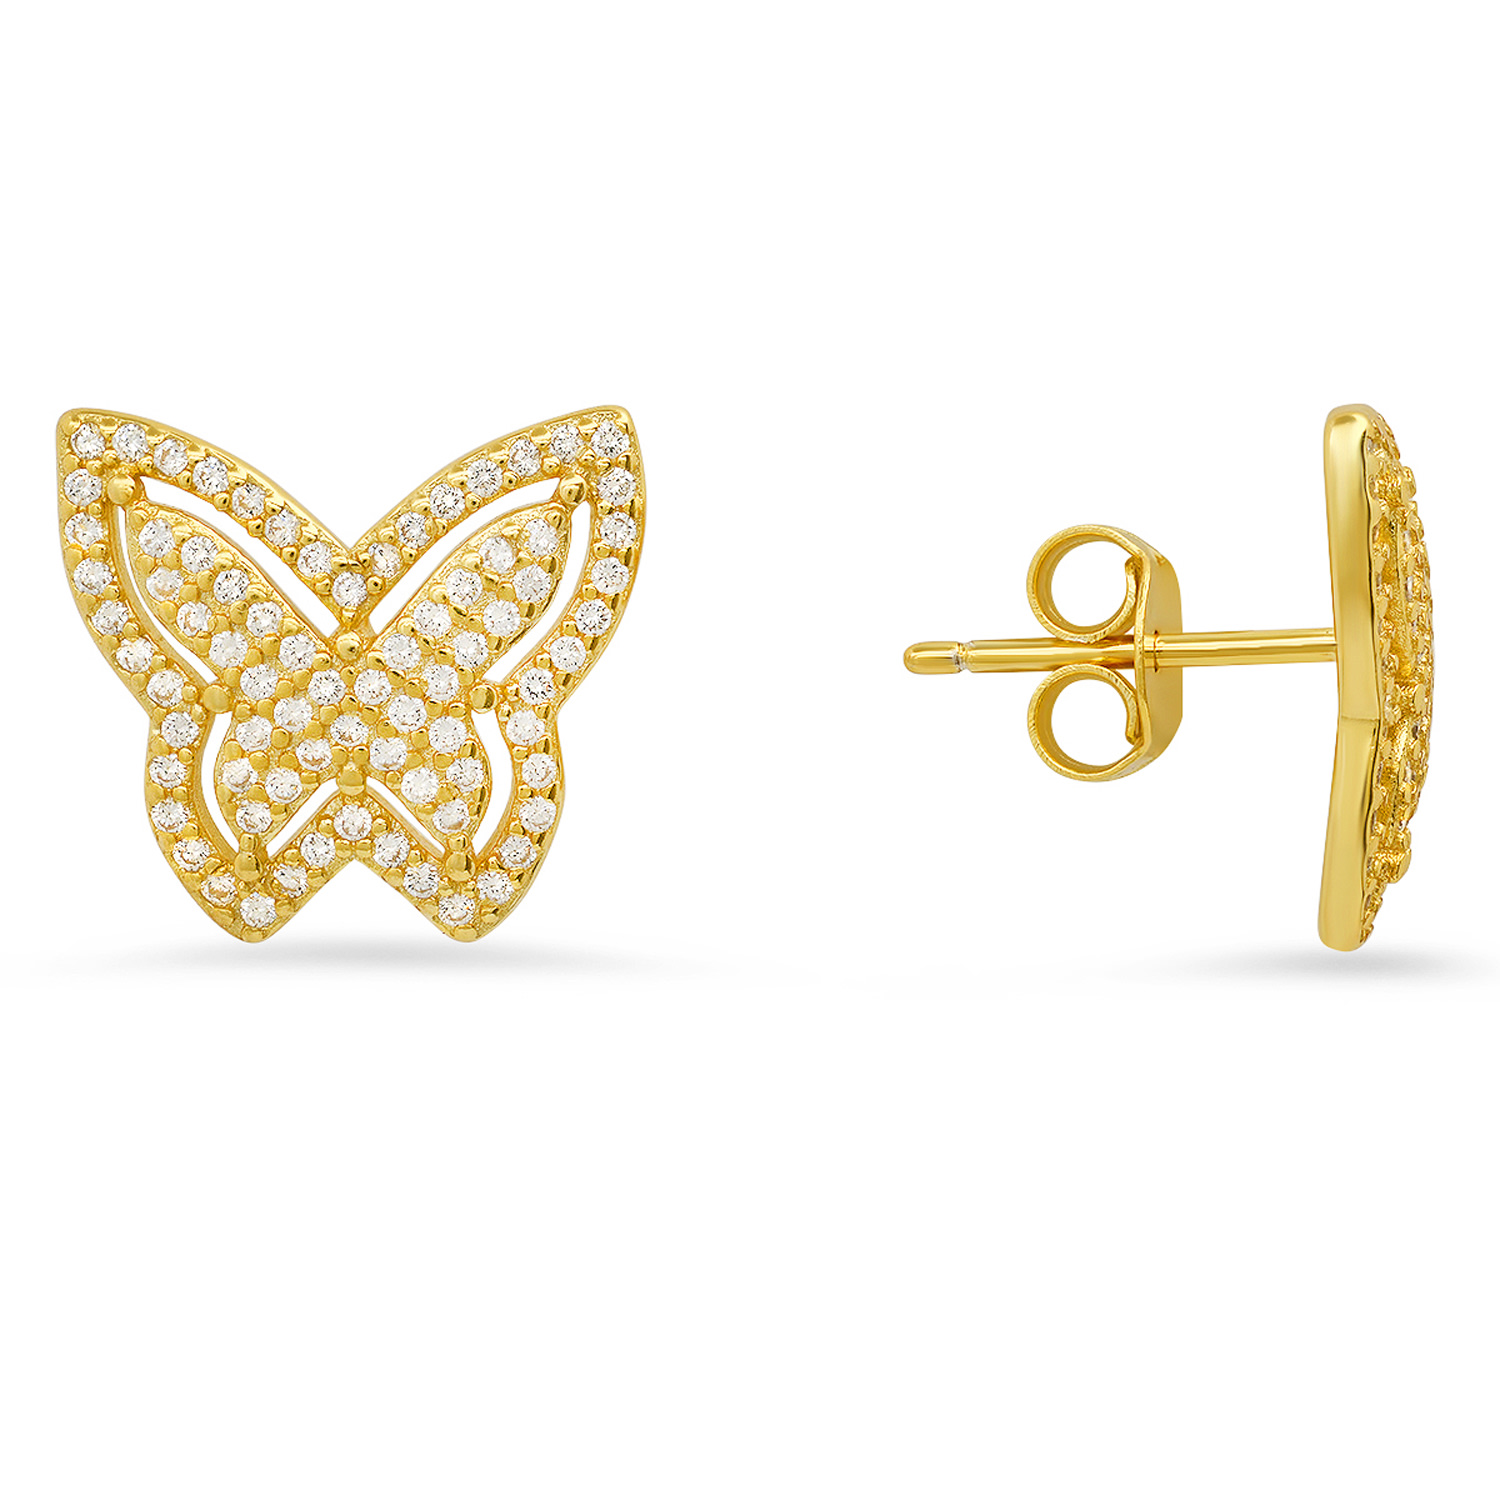 Kylie Harper Women's Gold Pave Butterfly Diamond Cz Stud Earrings